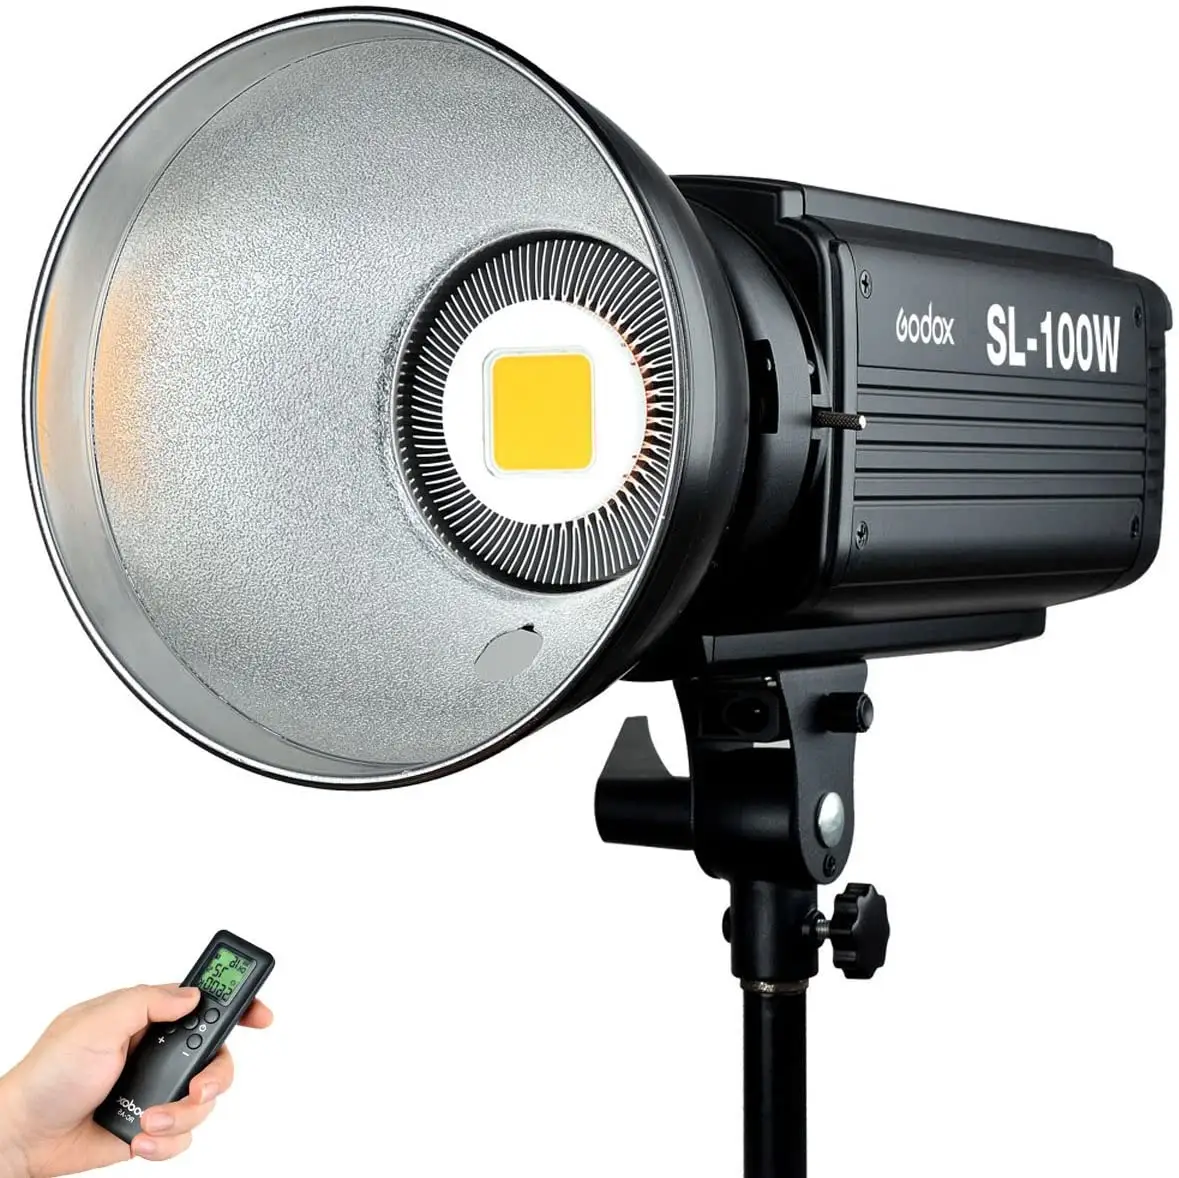 Godox-télécommande pour Studio photo, SL-100W K, modèle 5600, monture blanche, lumière en continu, pour caméra, caméscope DV, livraison gratuite